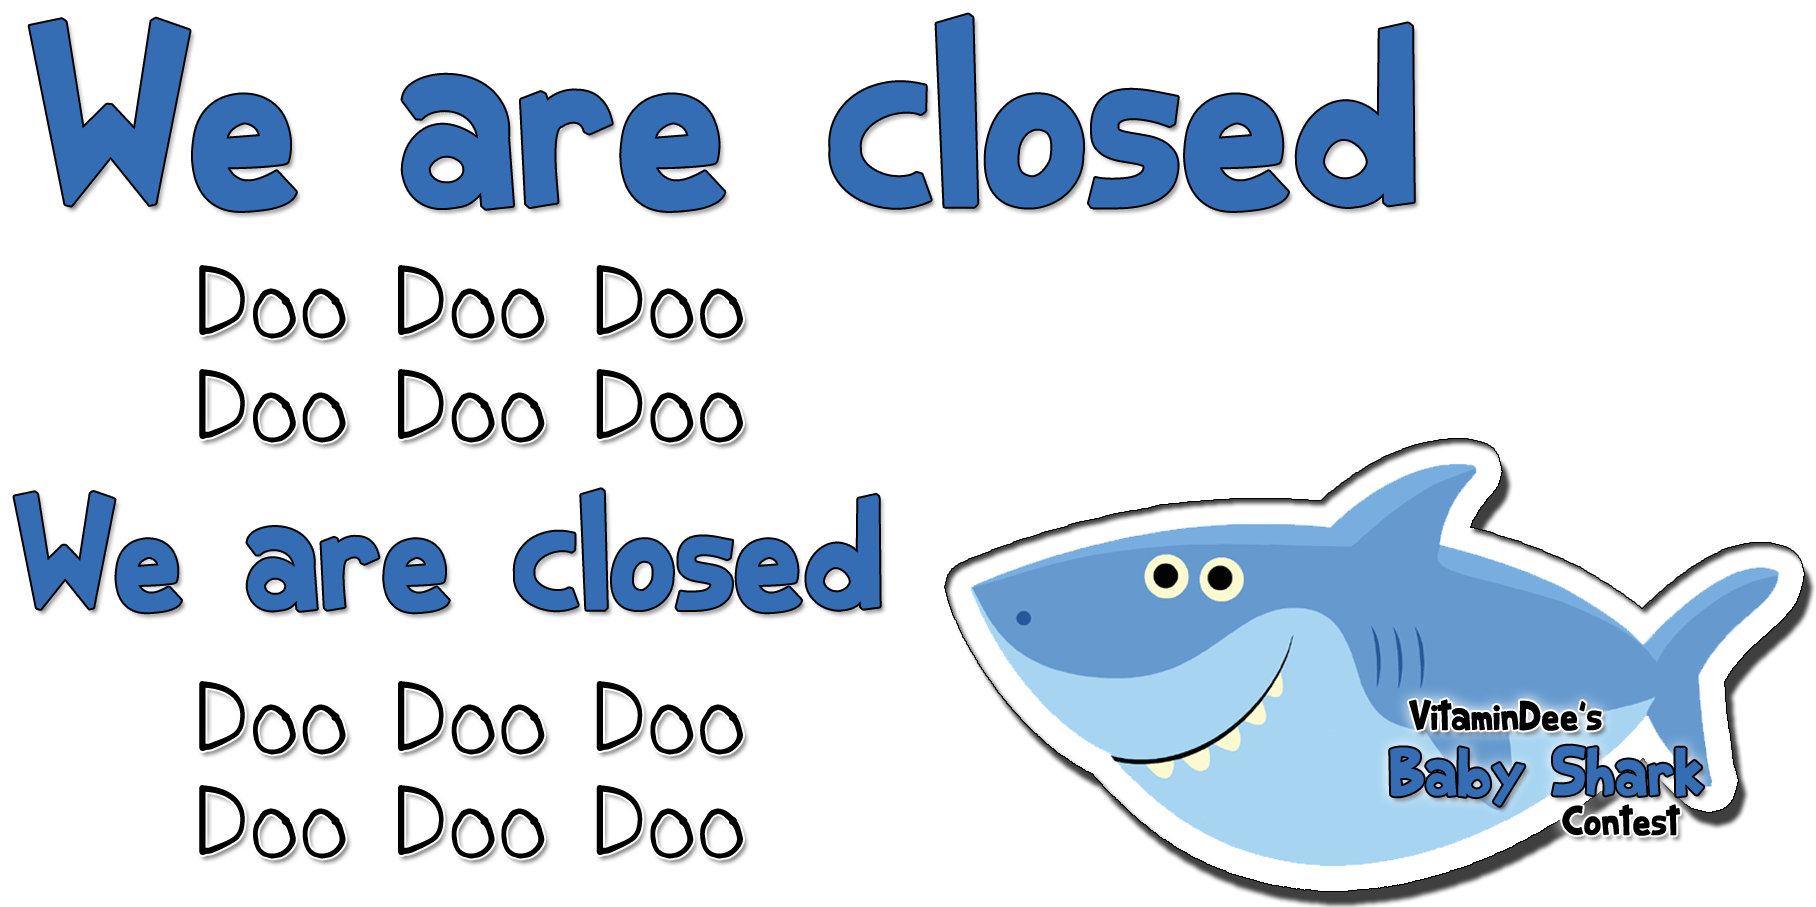 We Are Closed Doo Doo Doo Doo Doo Dooo - Great White Shark Clipart (1920x960), Png Download